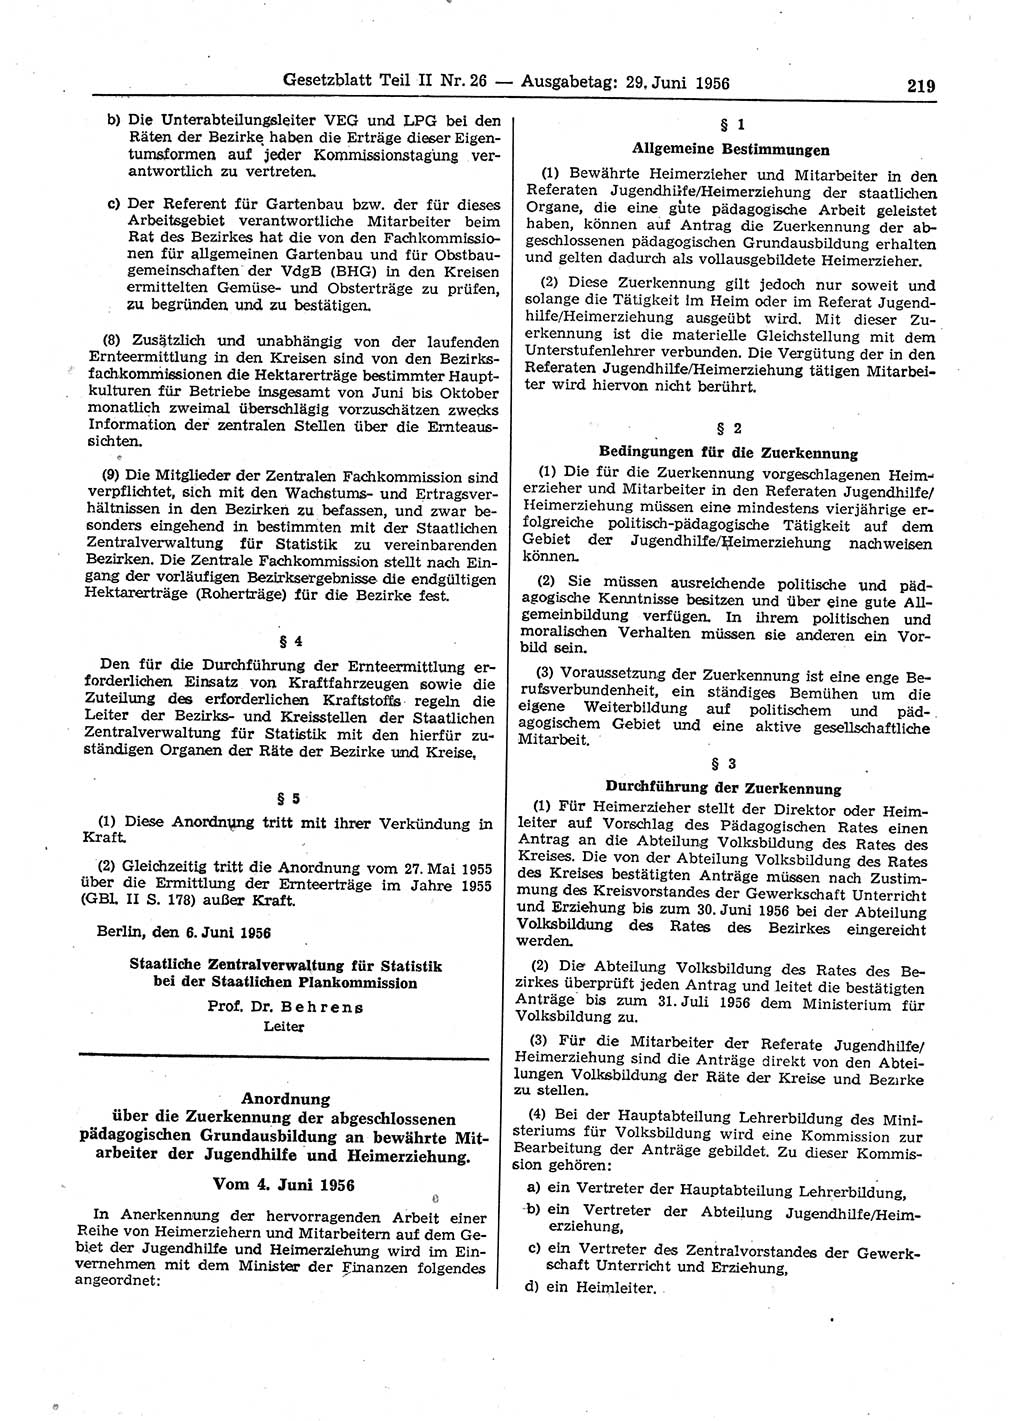 Gesetzblatt (GBl.) der Deutschen Demokratischen Republik (DDR) Teil ⅠⅠ 1956, Seite 219 (GBl. DDR ⅠⅠ 1956, S. 219)